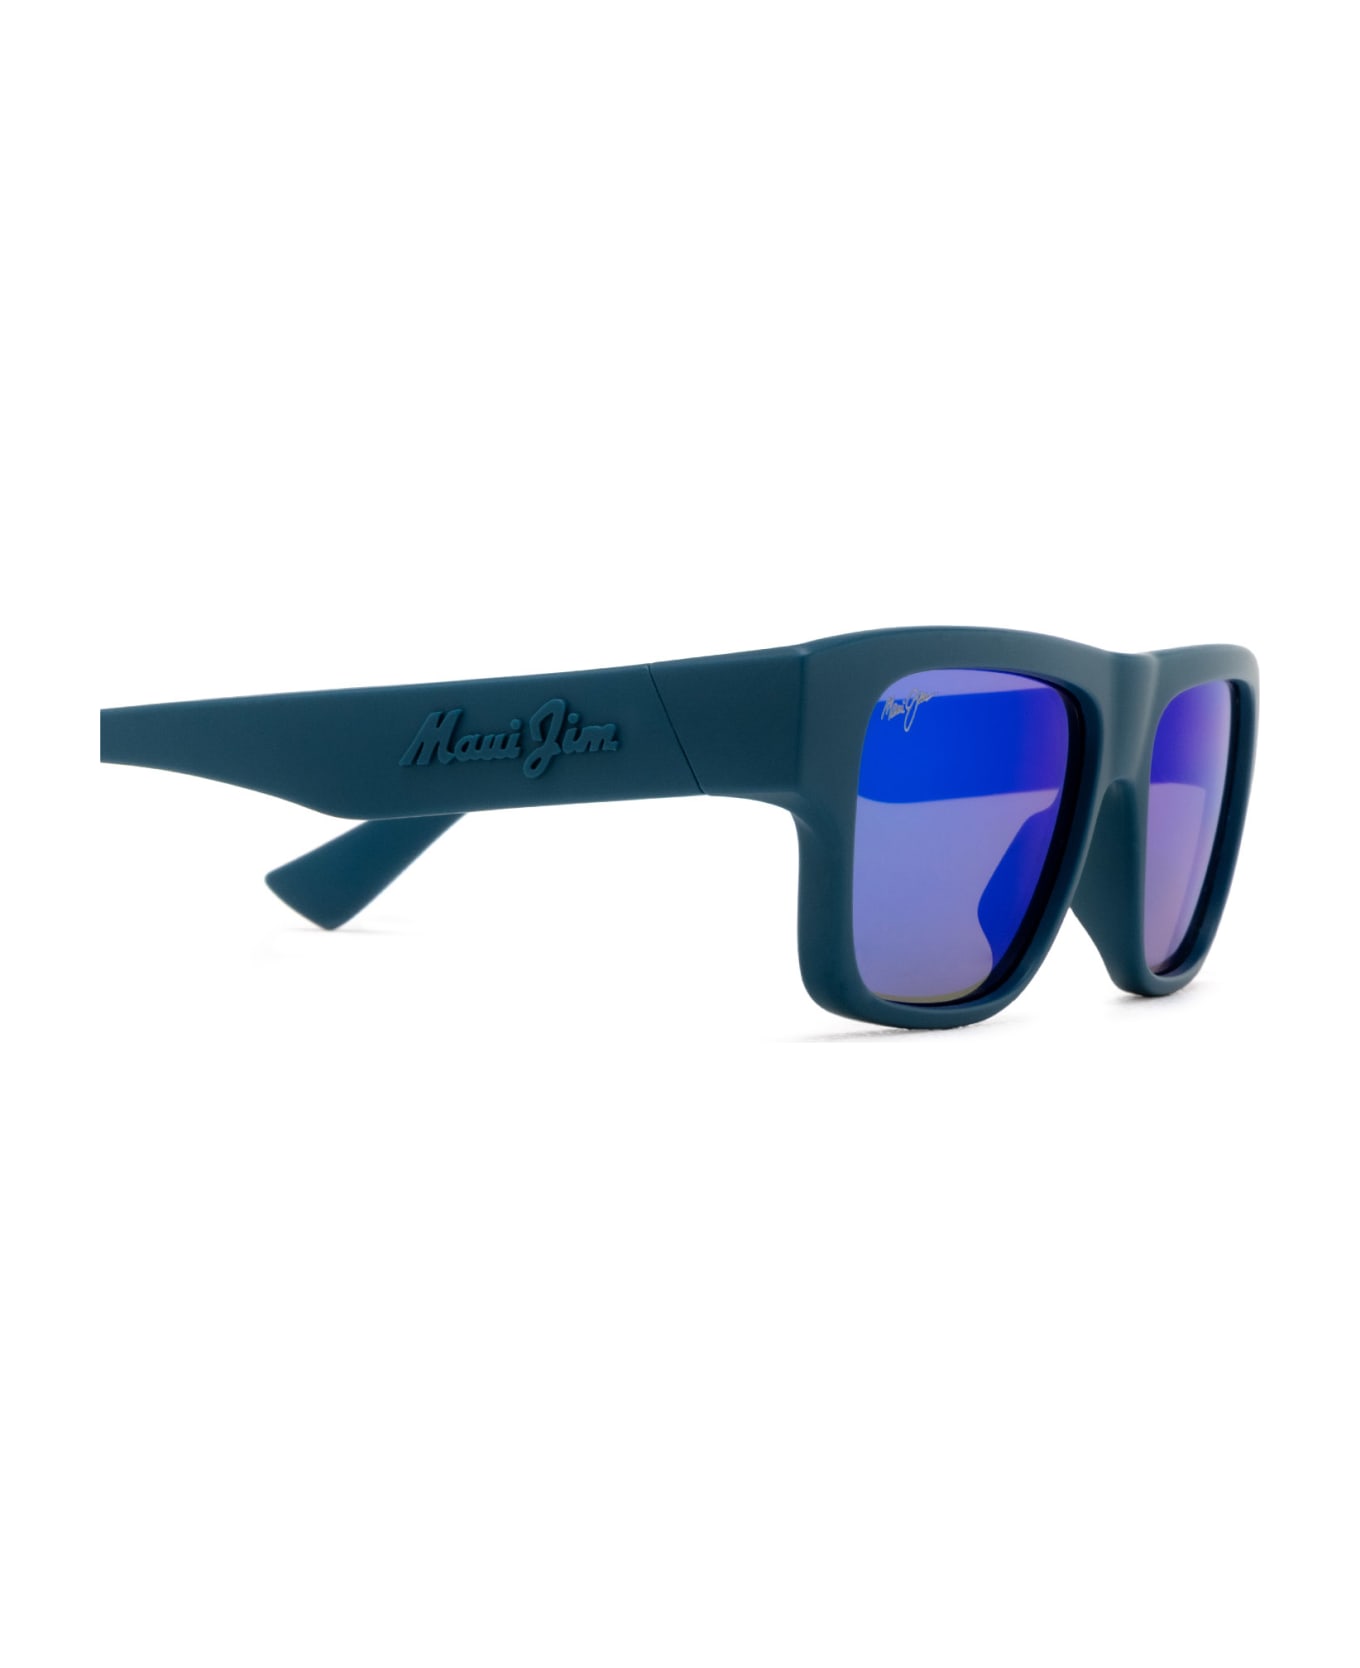 Maui Jim Mj638 Matte Petrol Blue Sunglasses - Matte Petrol Blue